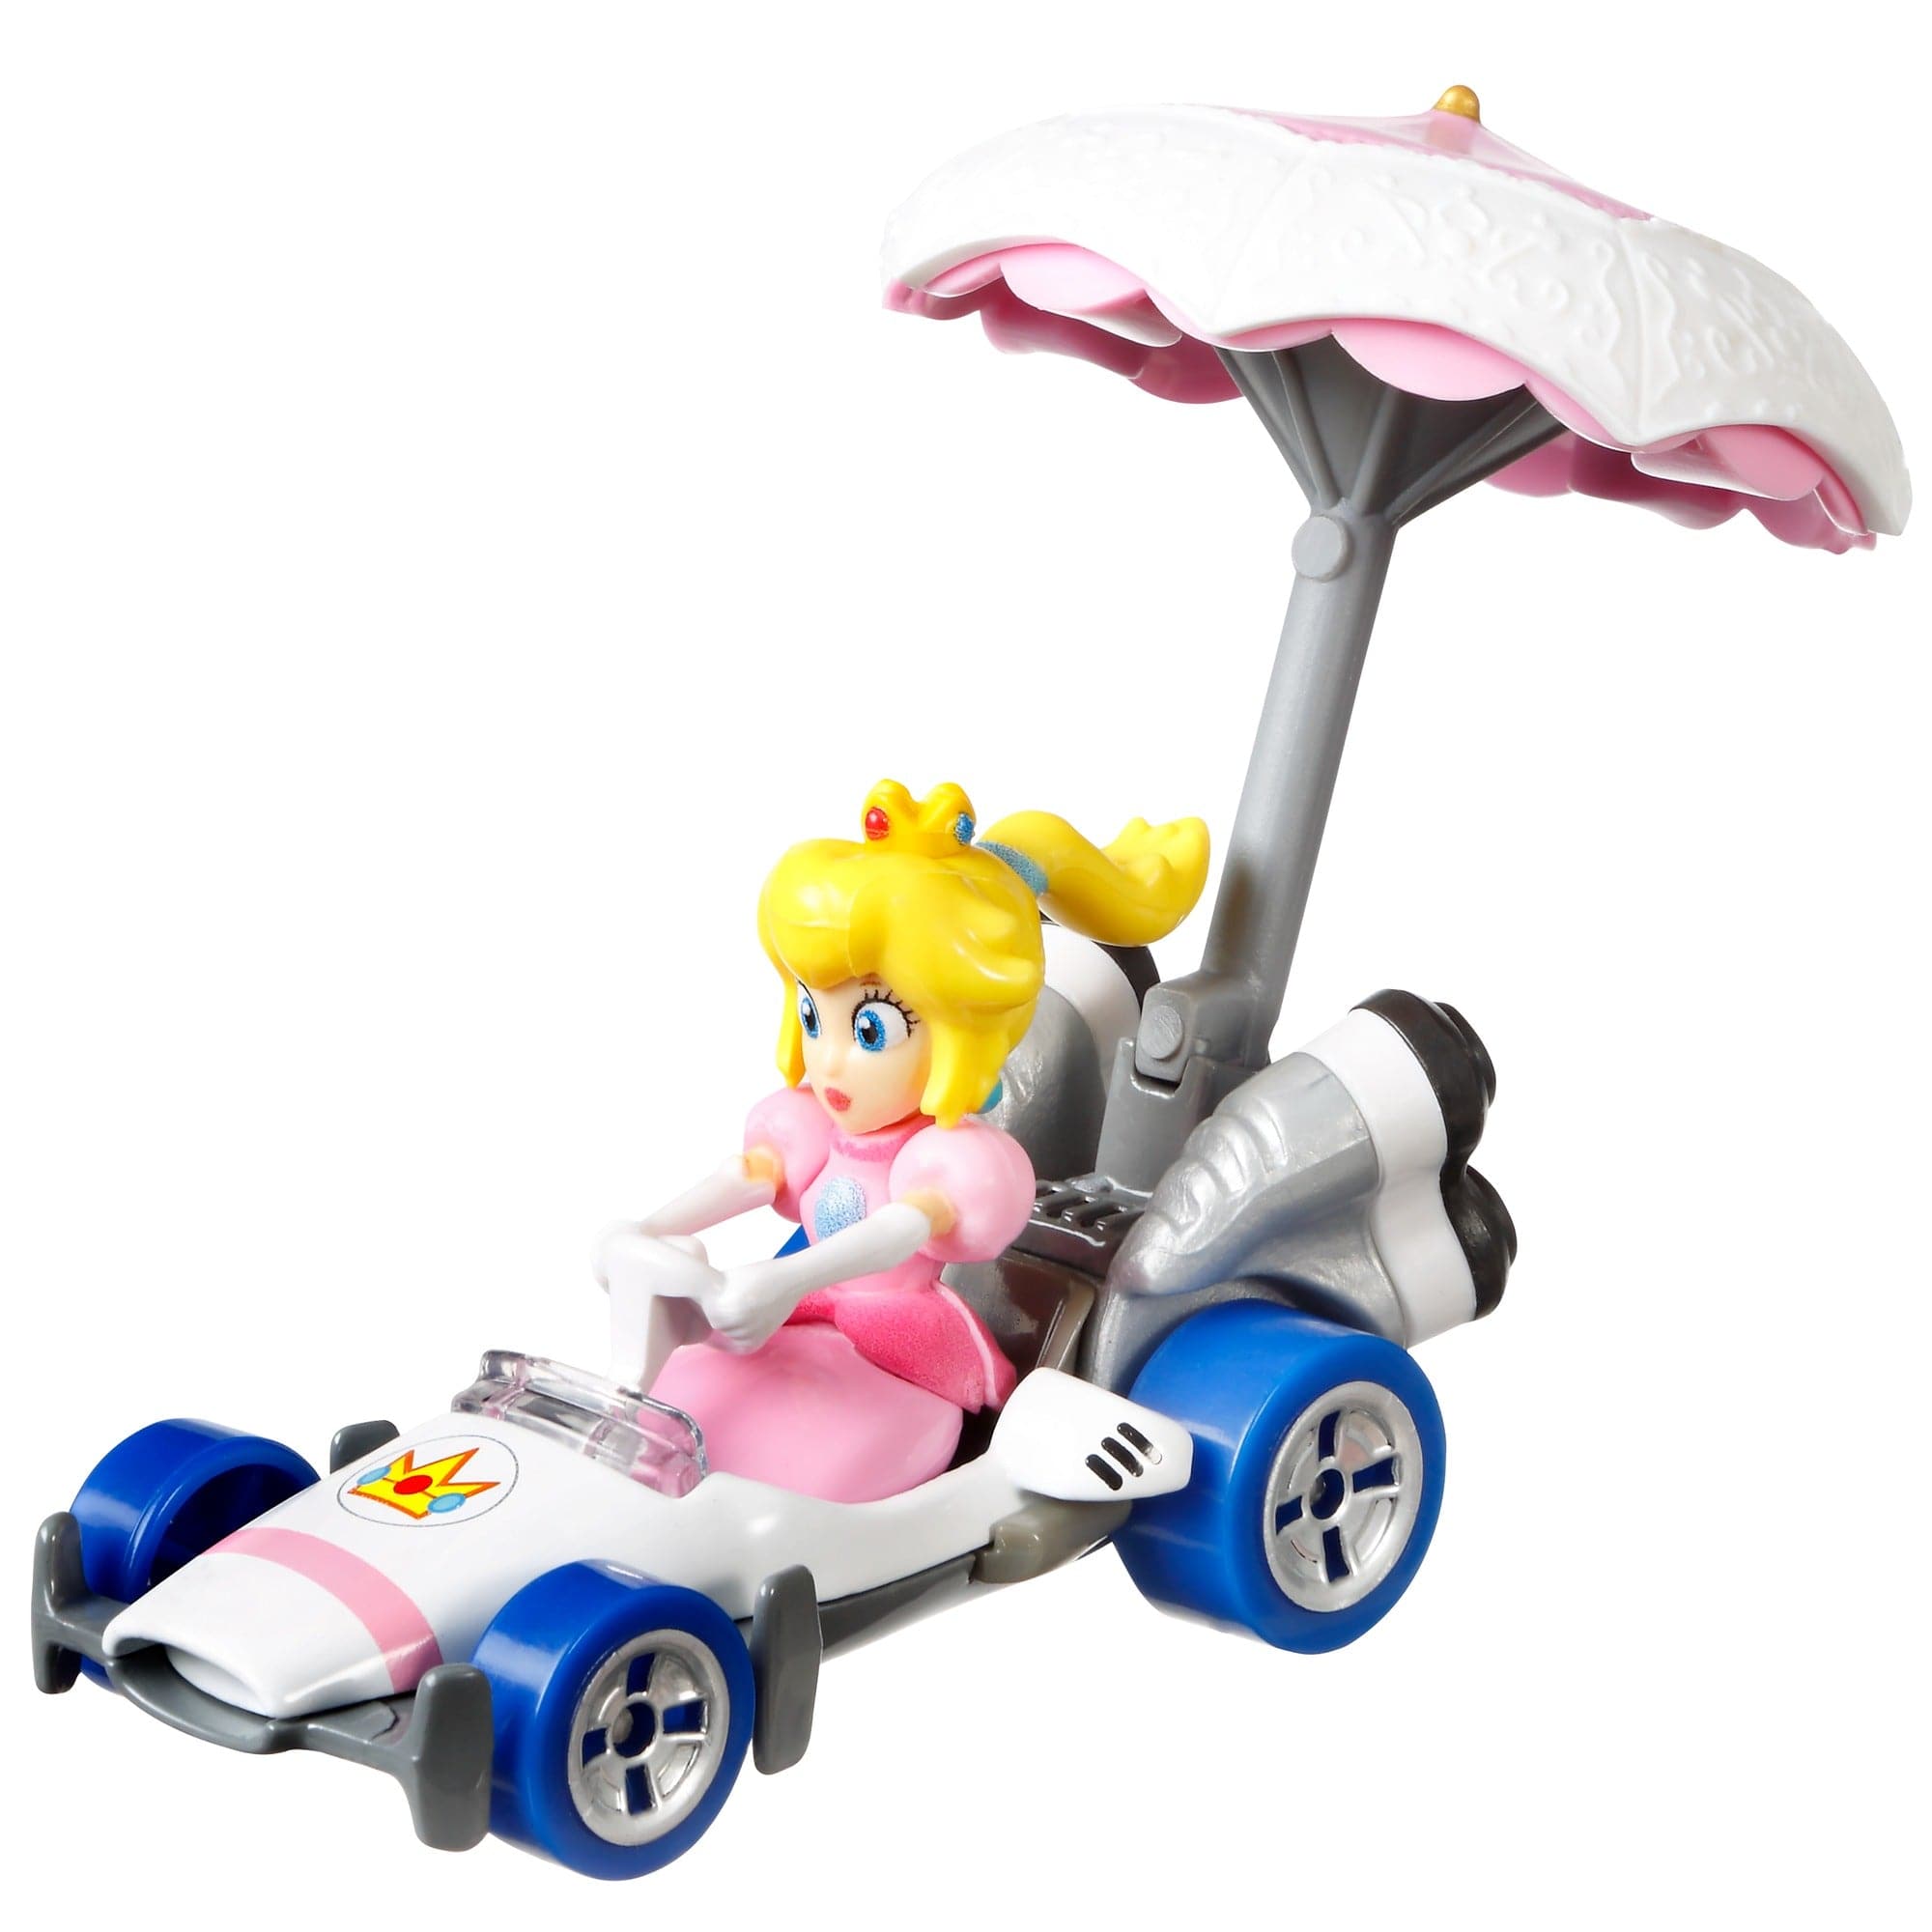 Mattel-Hot Wheels Mario Kart Gliders-GVD36-Princess Peach B-Dasher + Peach Parasol-Legacy Toys